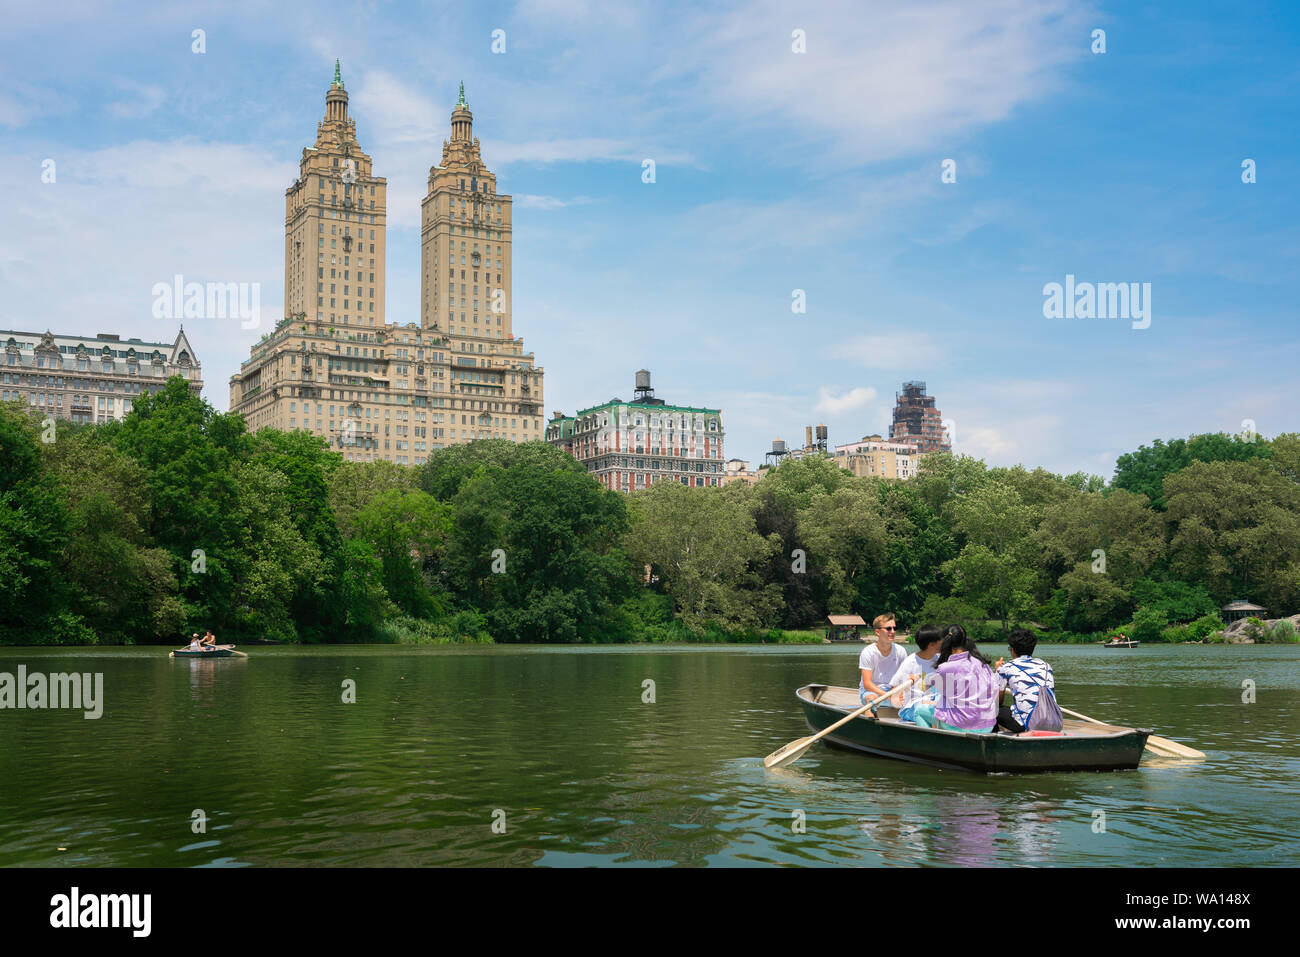 New York Central Park, vista in estate di persone imbarcazioni a remi su Central Park Lake con il San Remo edificio in background, Manhattan NYC, STATI UNITI D'AMERICA Foto Stock